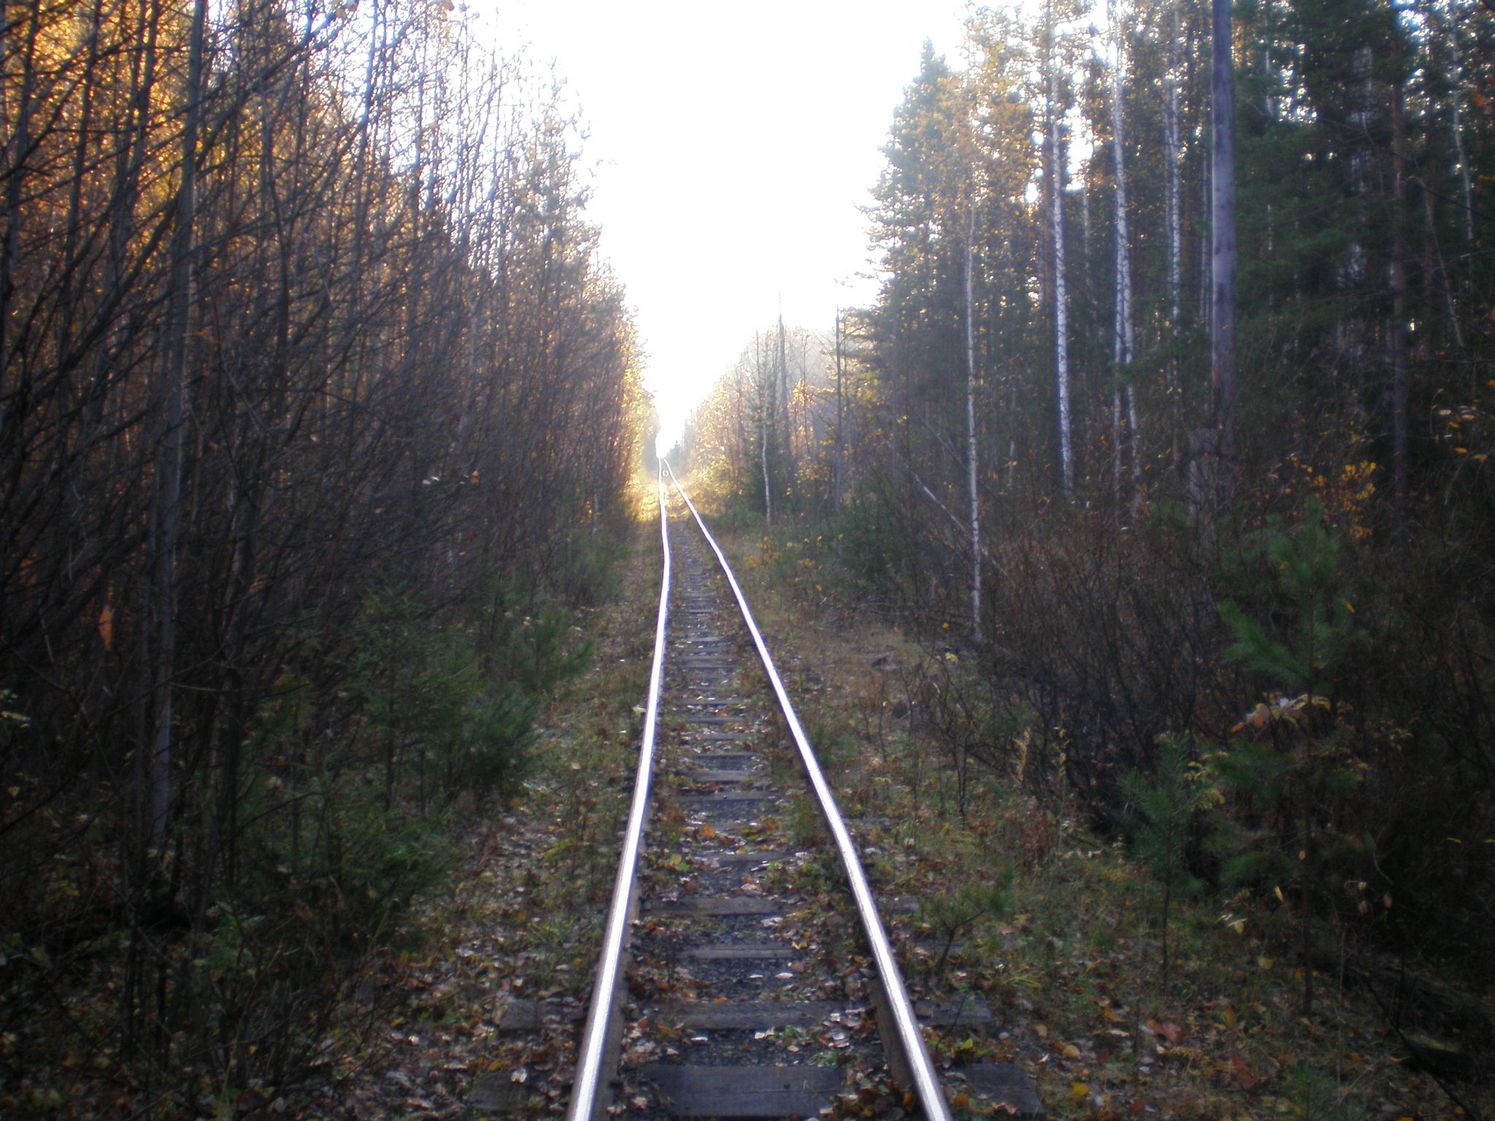 Висимо-Уткинская узкоколейная железная дорога  — фотографии, сделанные в 2007 году (часть 17)